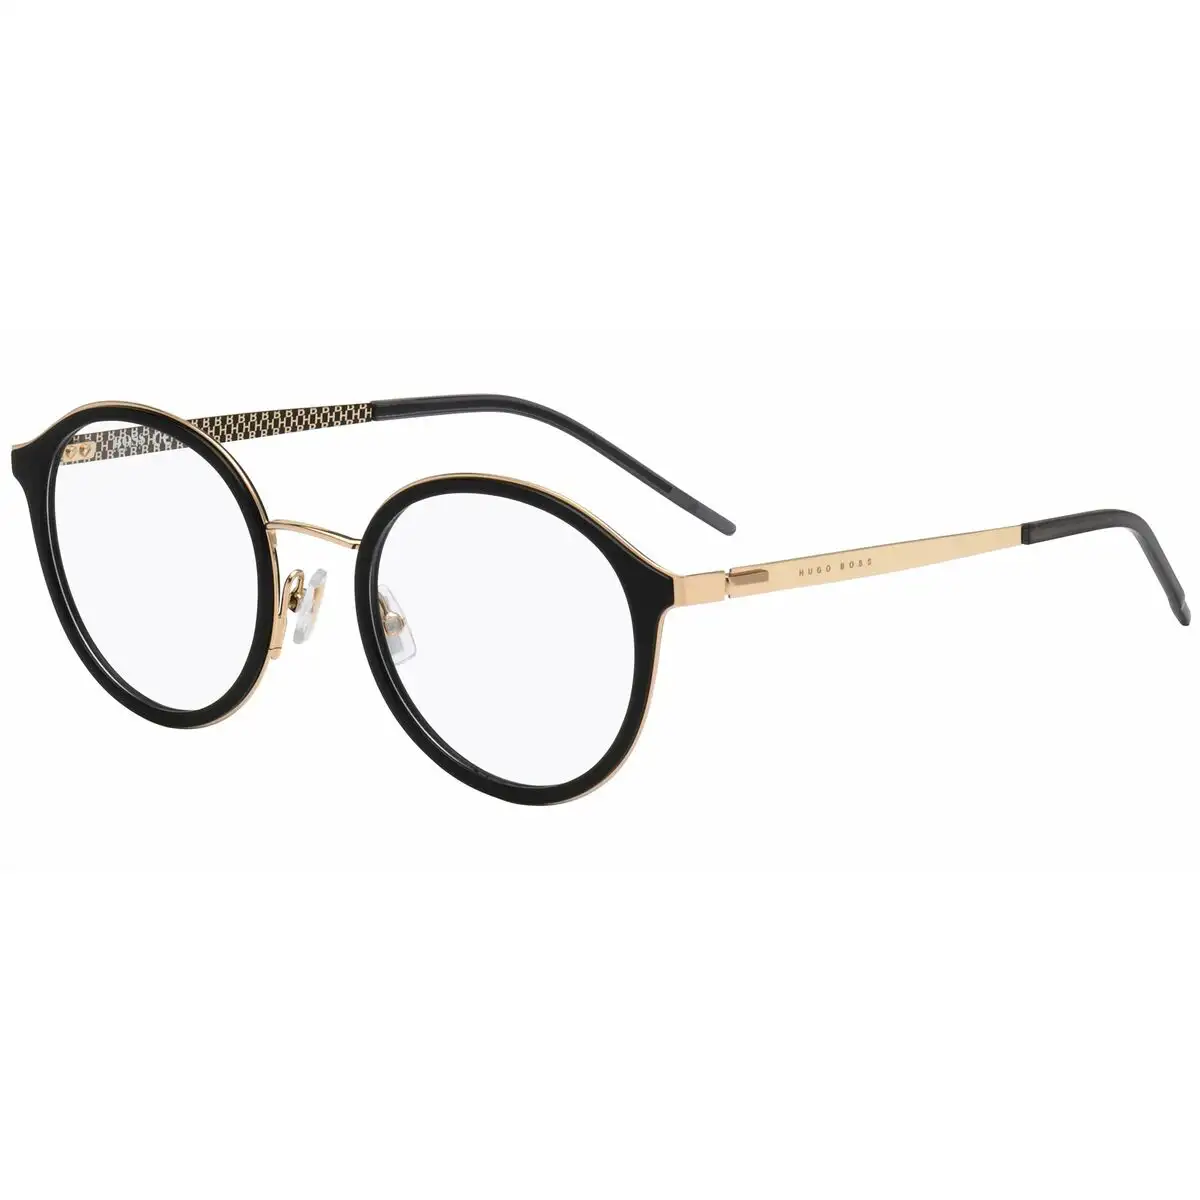 Monture de lunettes homme hugo boss boss 1210_3866. DIAYTAR SENEGAL - Là où l'Élégance Devient un Mode de Vie. Naviguez à travers notre gamme et choisissez des produits qui apportent une touche raffinée à votre quotidien.